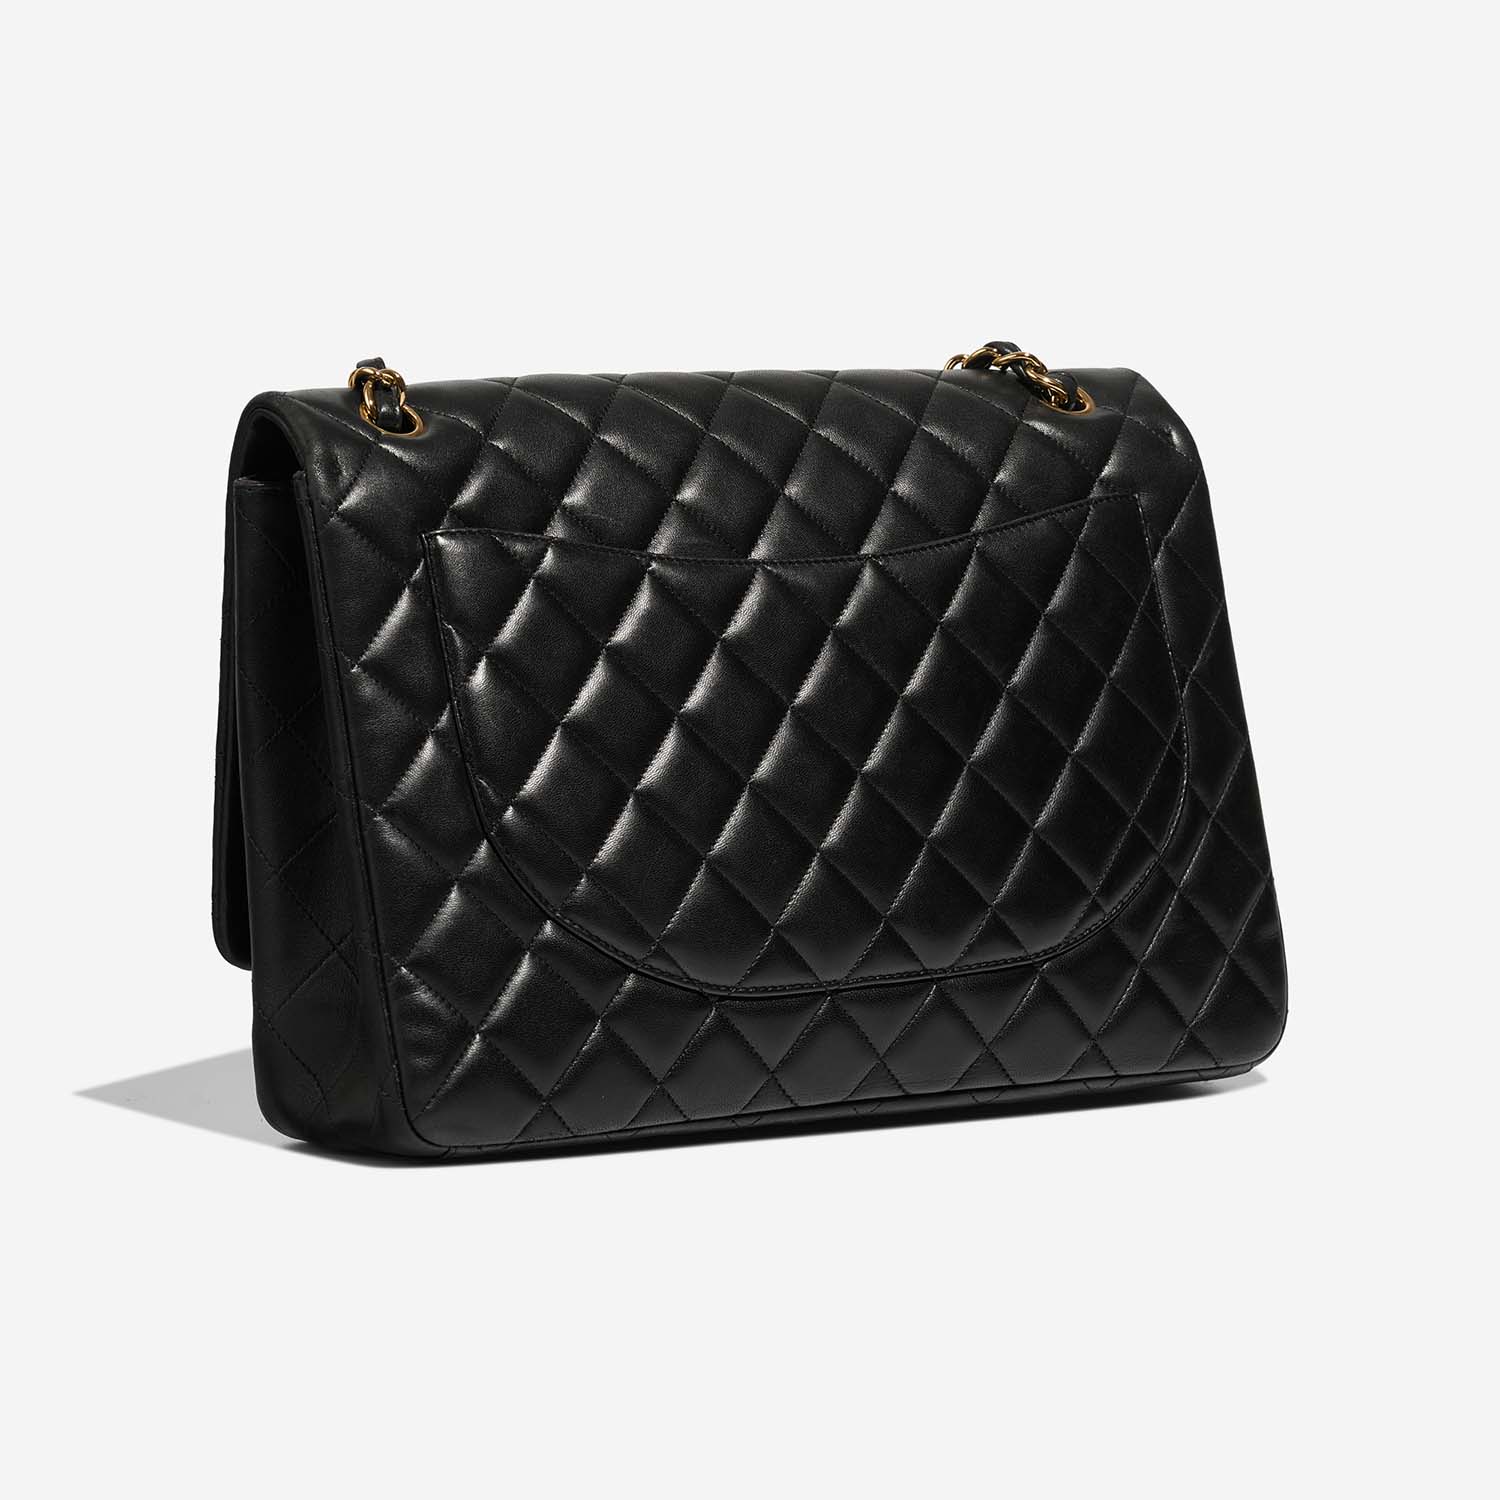 Chanel Timeless Maxi Black Side Back | Verkaufen Sie Ihre Designer-Tasche auf Saclab.com